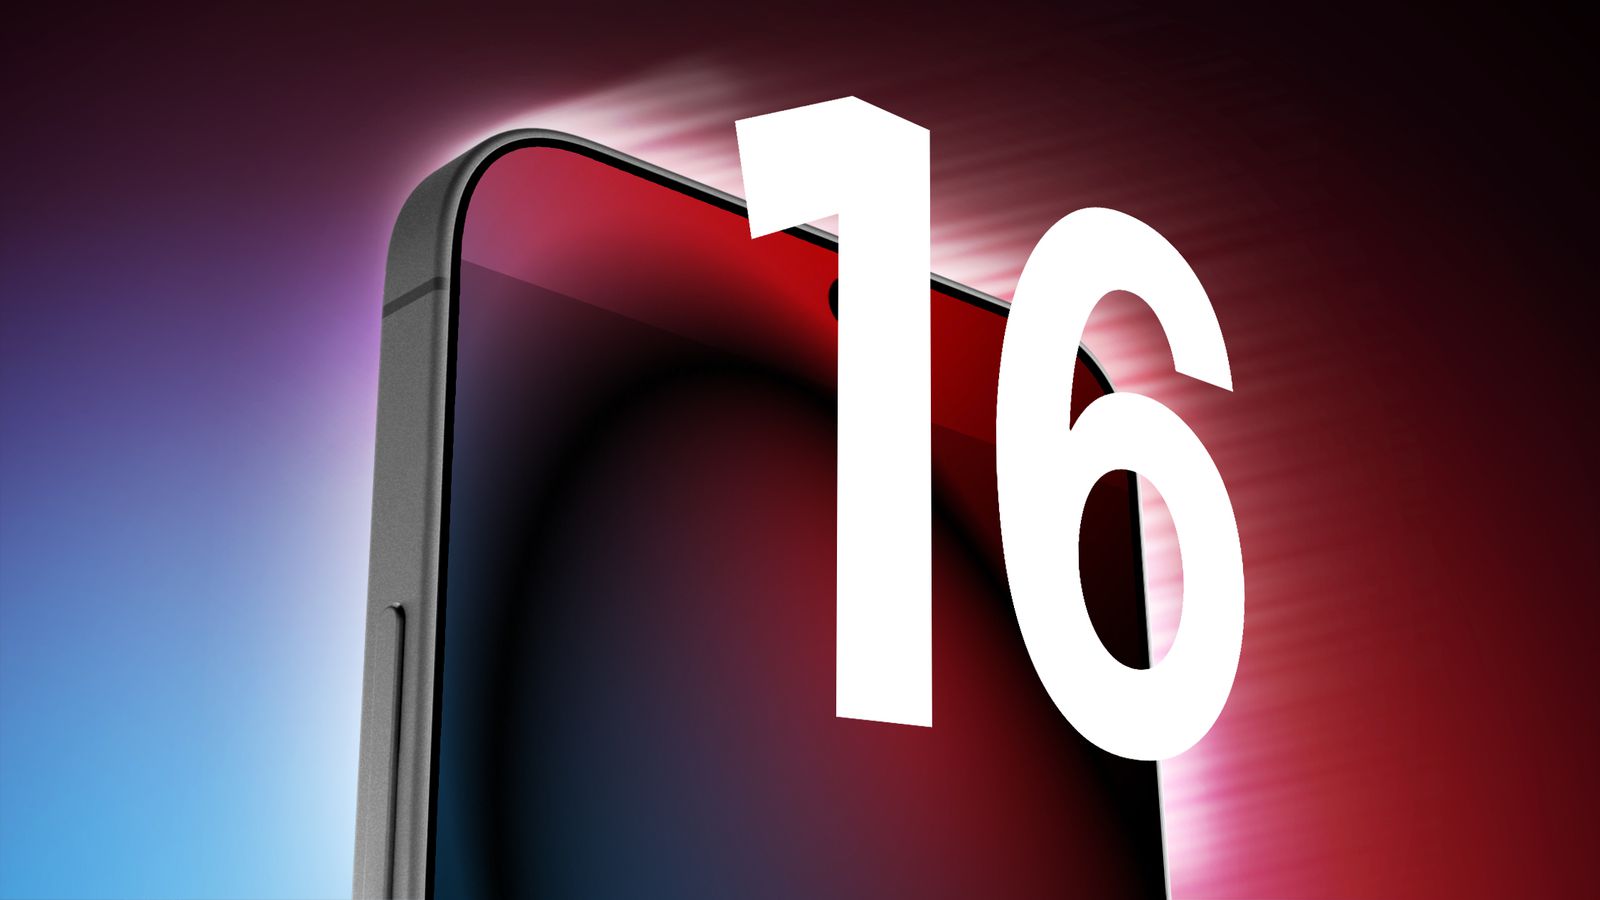 Марк Гурман подтвердил слухи об увеличении размера дисплея iPhone 16 Pro